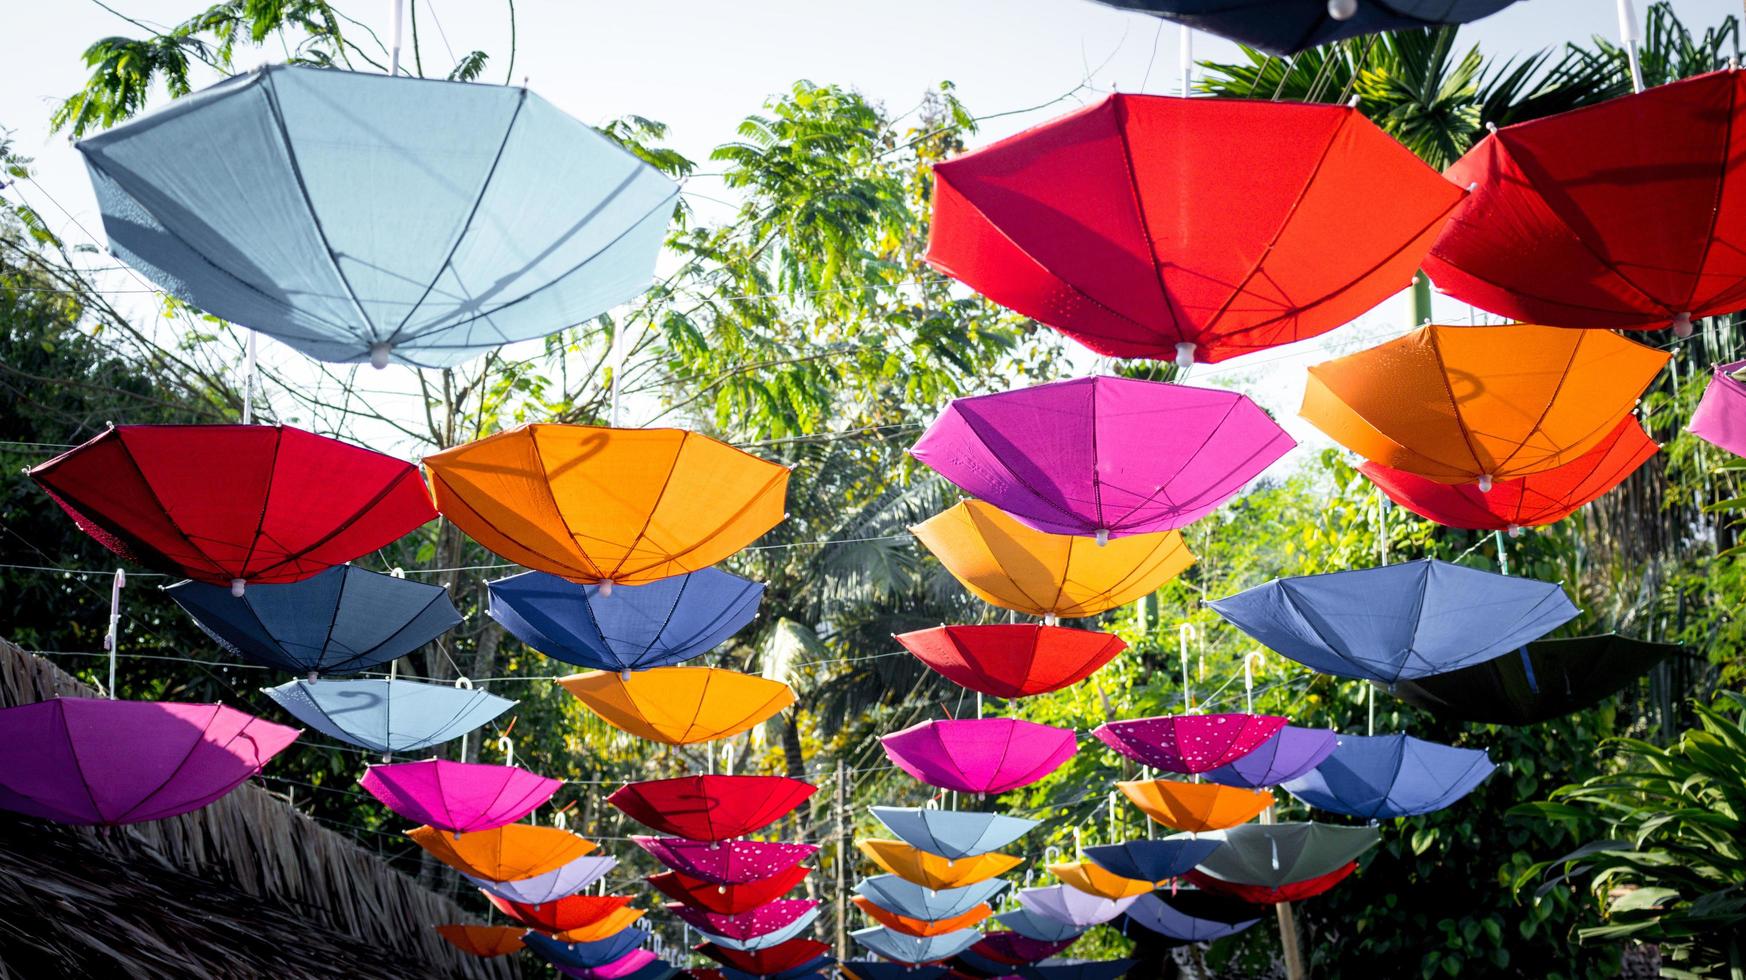 Im Garten hängen viele Sonnenschirme in verschiedenen Farben, die den Menschen ein entspanntes Gefühl vermitteln. foto